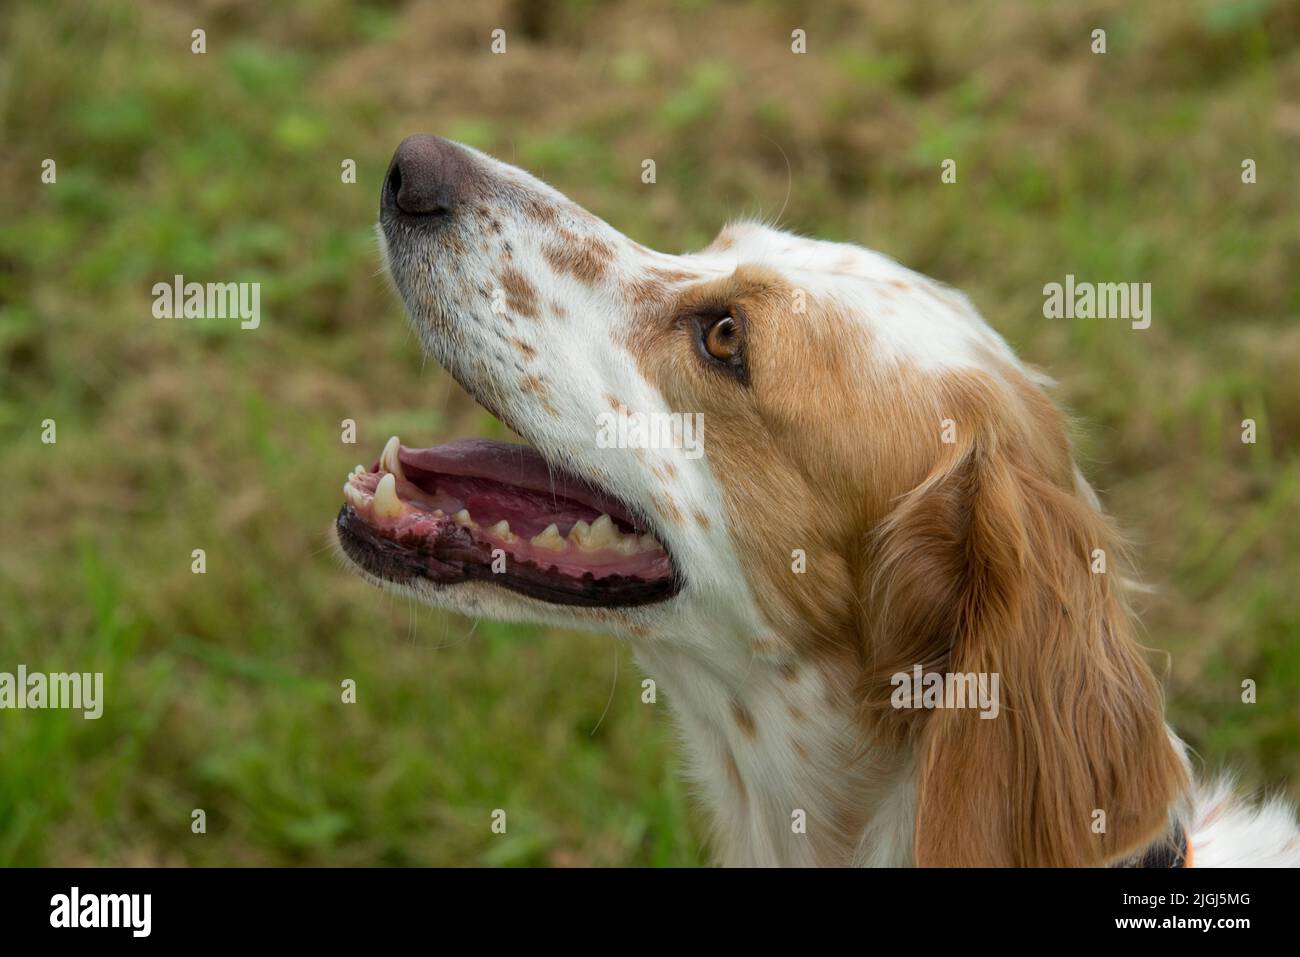 Cabeza de una perra inglesa setter, las mandíbulas ligeramente abiertas con ojos marrones mirando atentamente, Berkshire, agosto Foto de stock